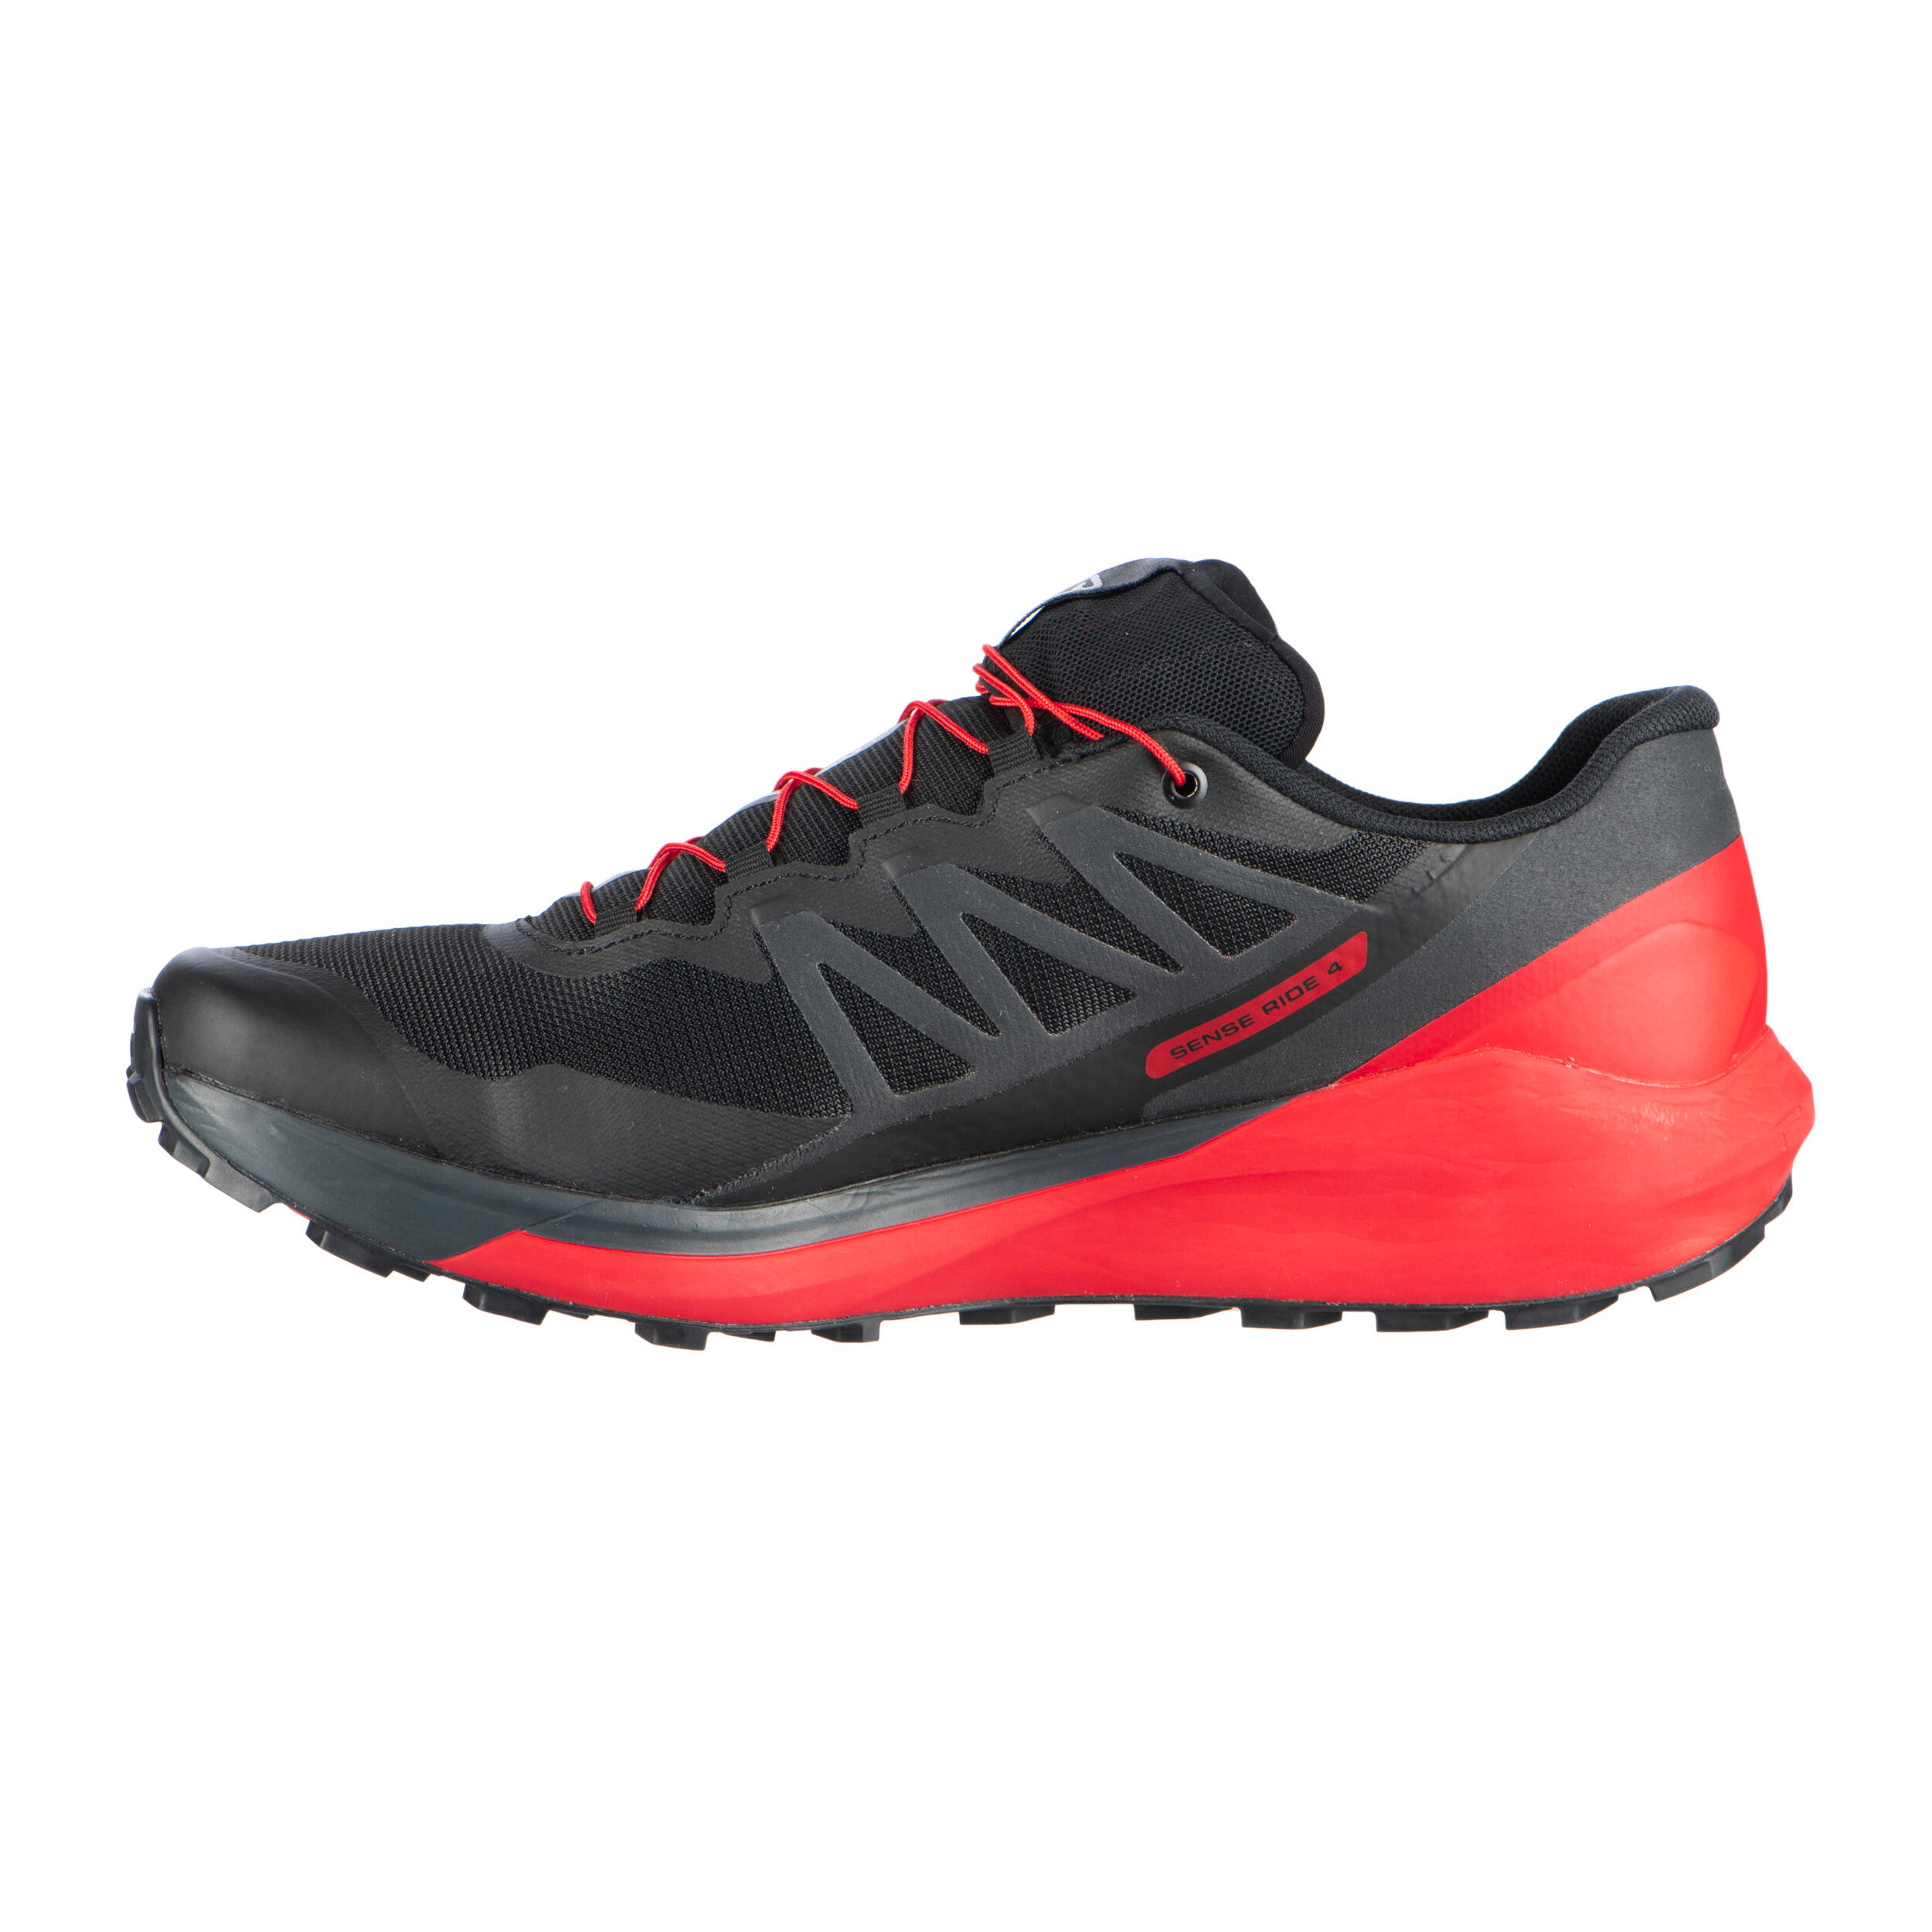 Trail Running Shoe Salomon Sense Ride 4 - black red 2/12